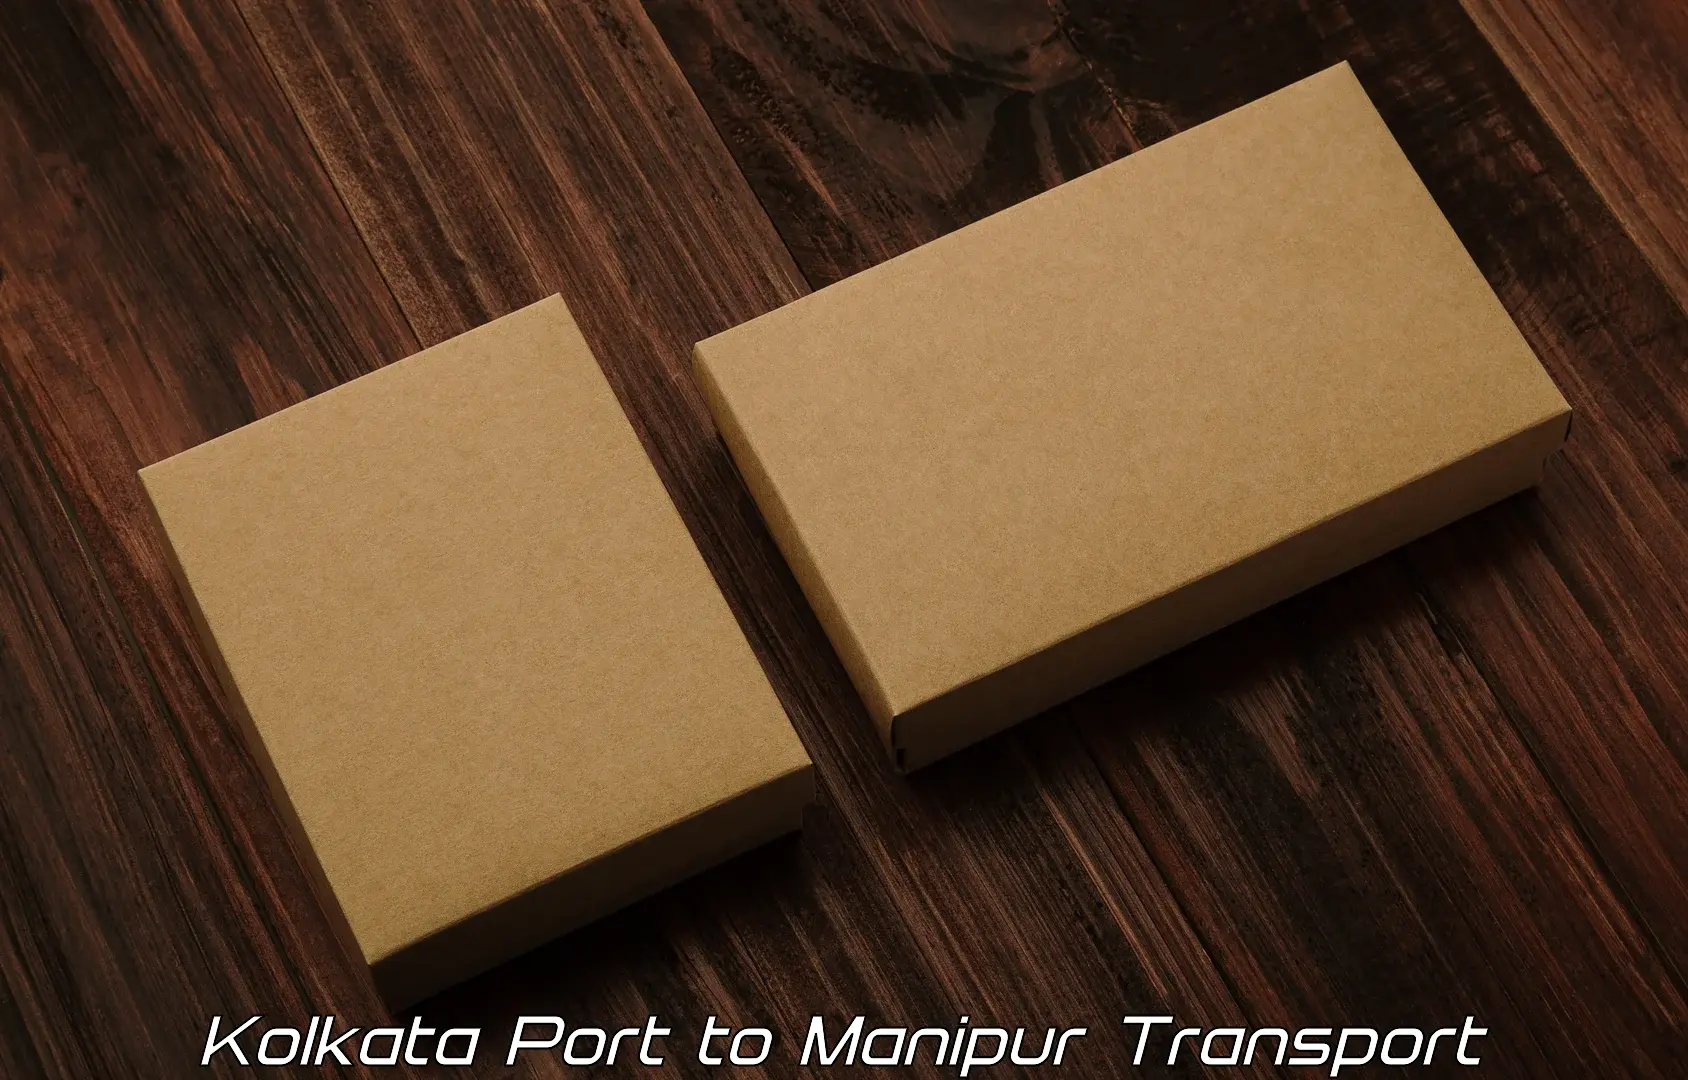 Door to door transport services in Kolkata Port to IIIT Senapati